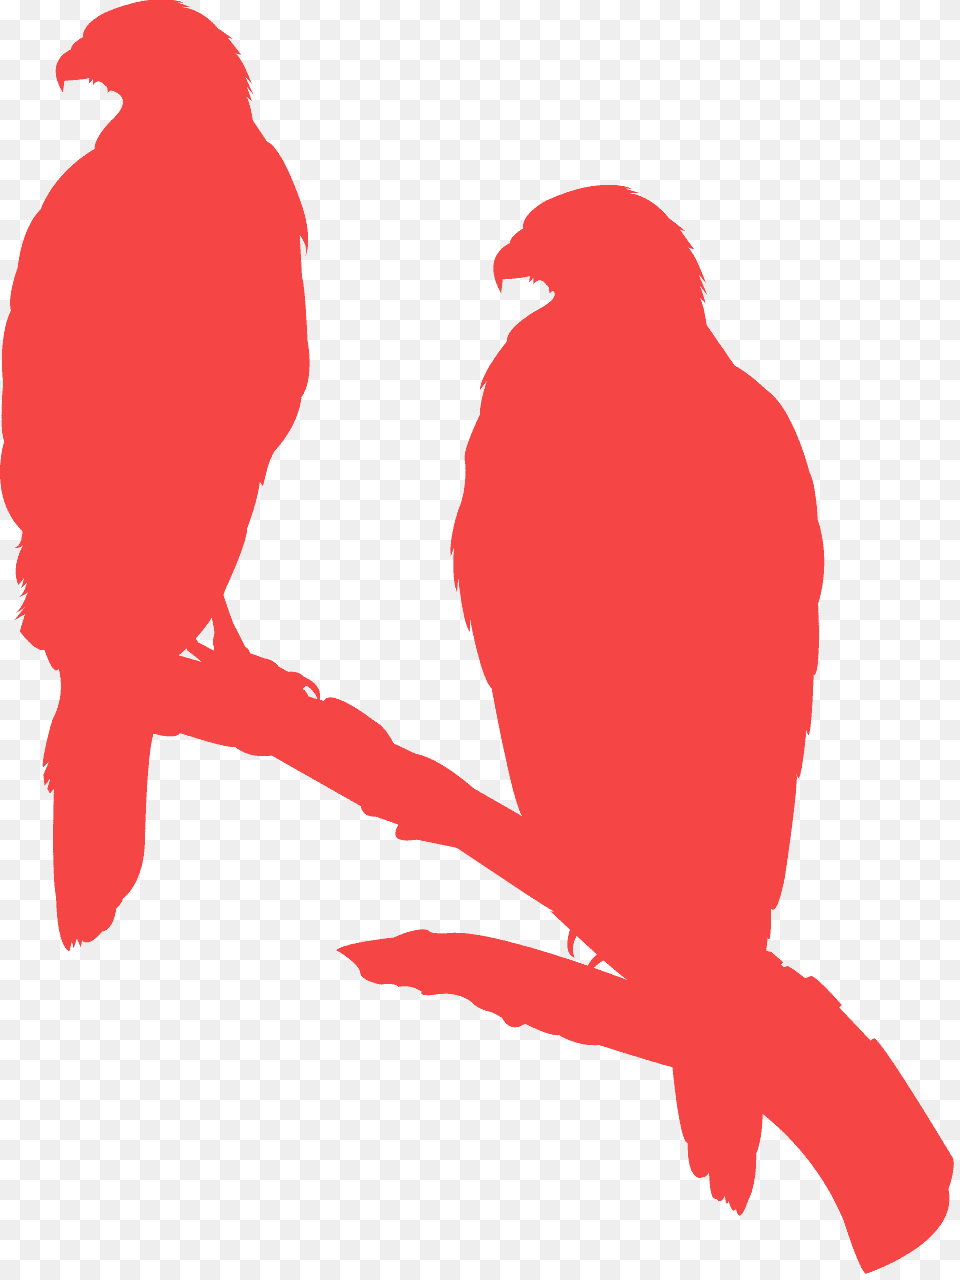 Siluetas De Aves Rapaces, Animal, Bird, Person Png